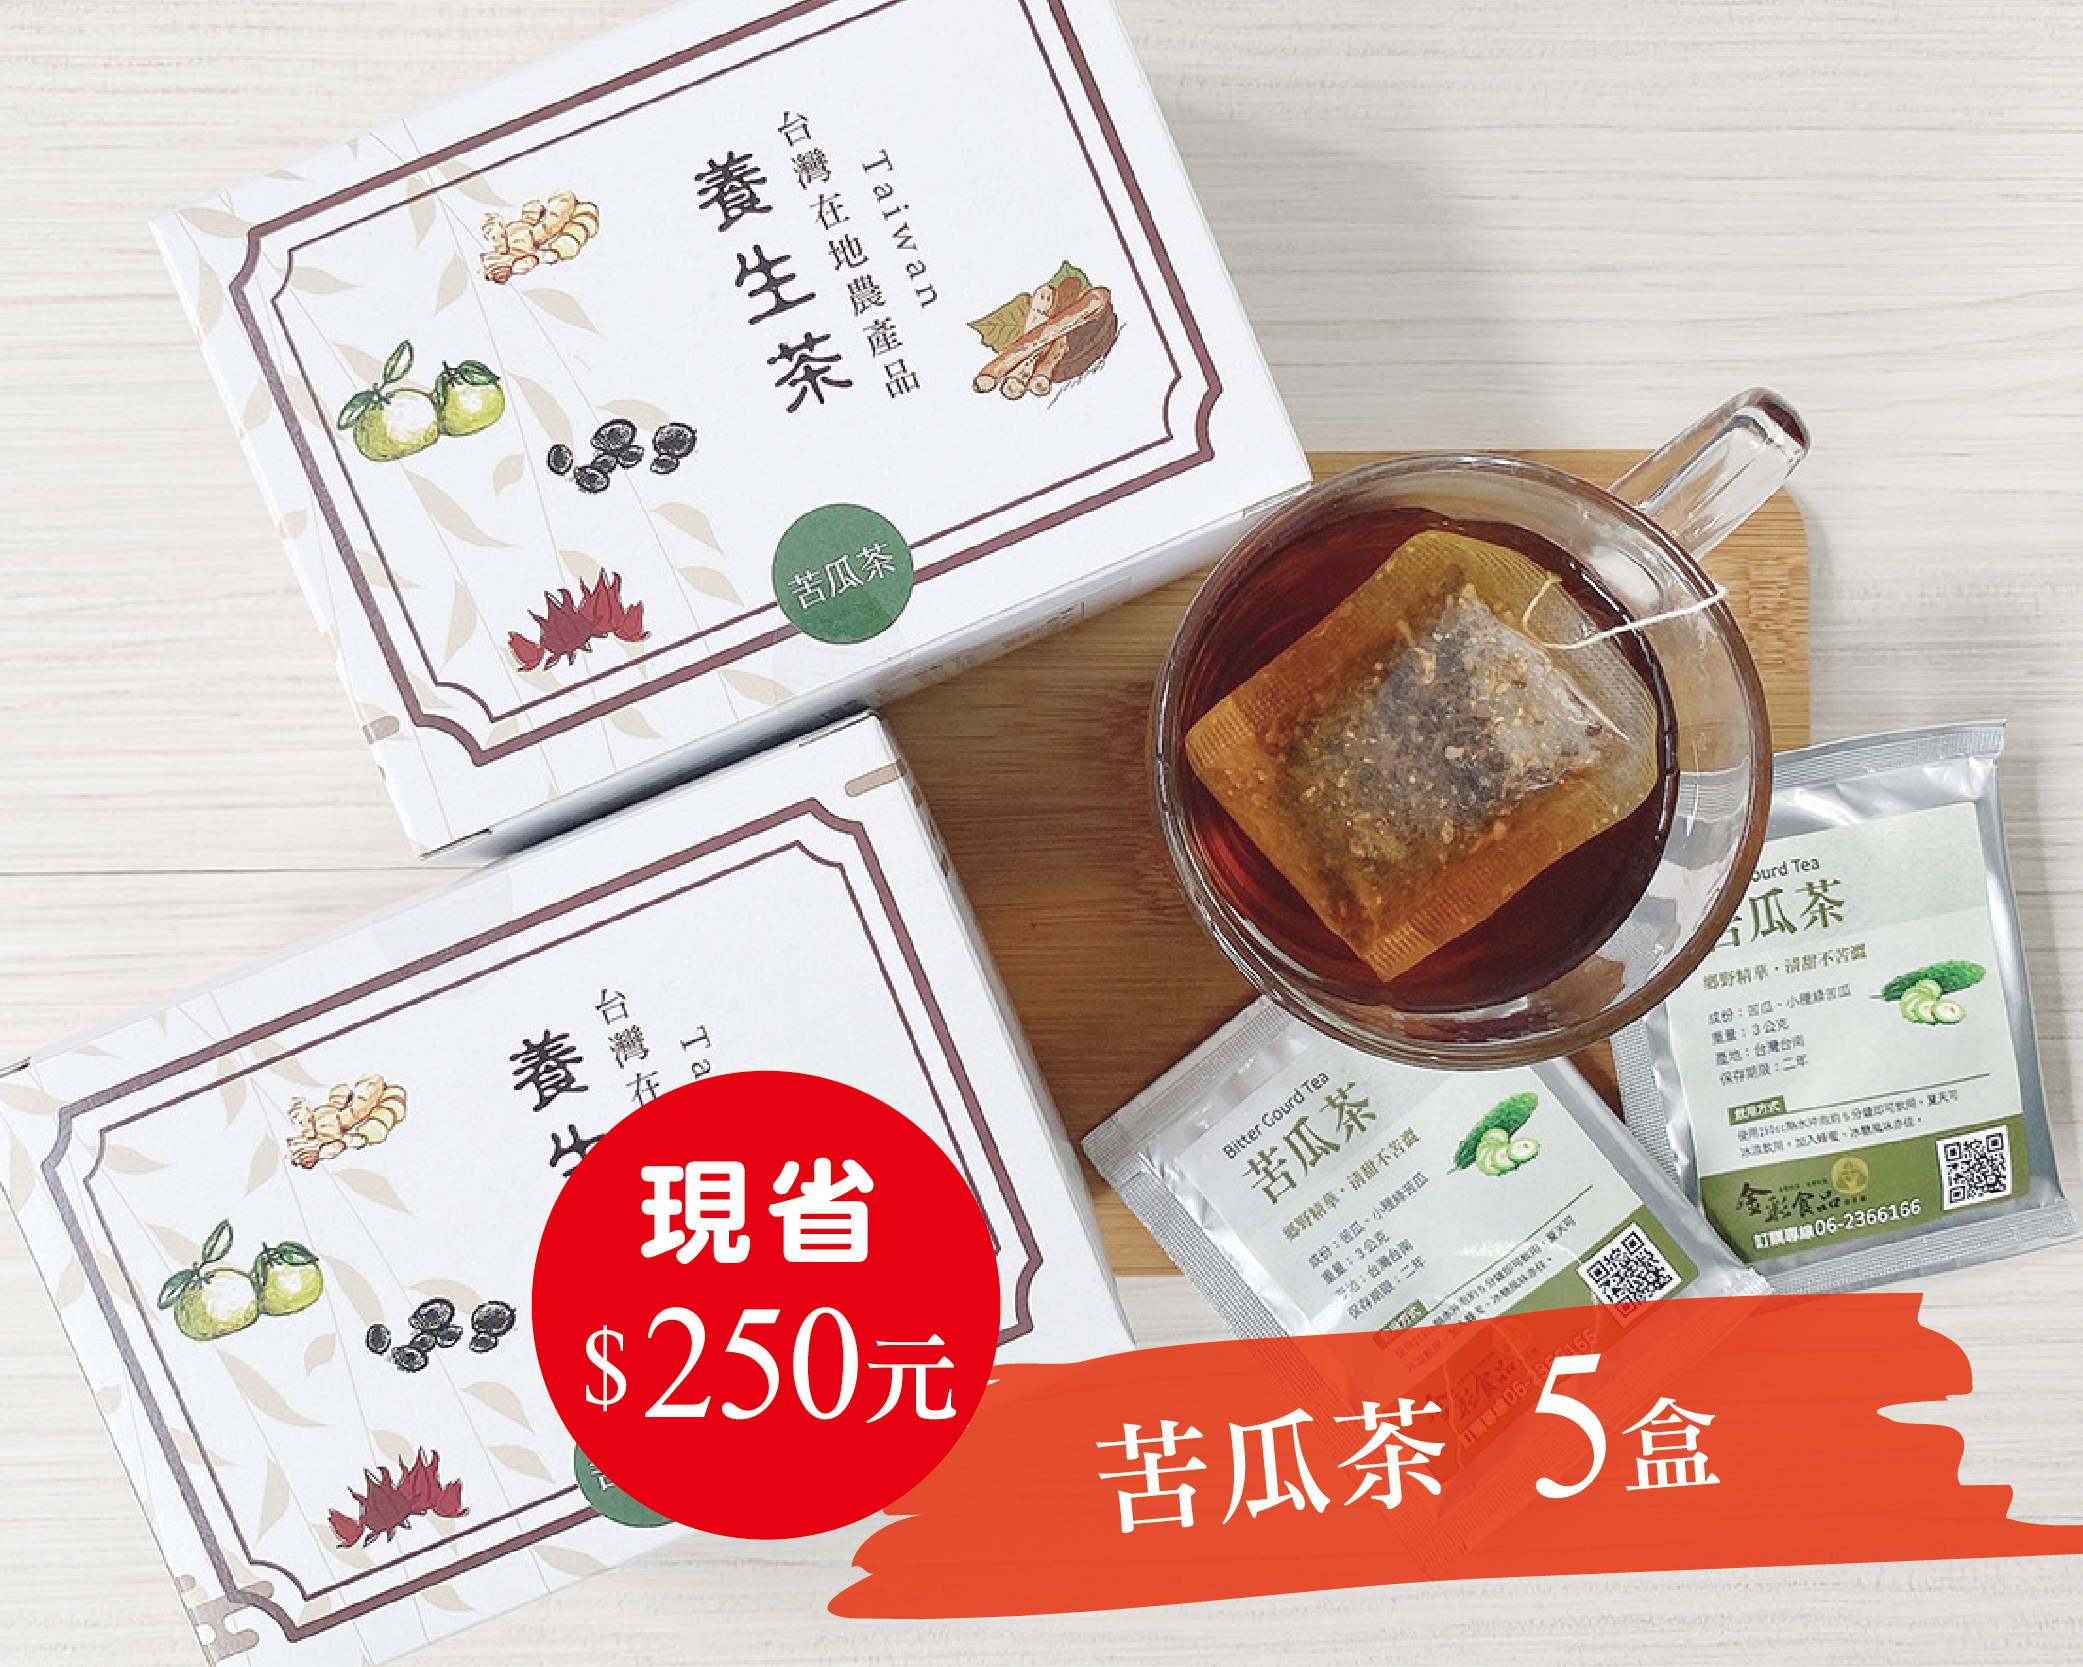 山苦瓜茶 5盒入 清涼退火 營養補給【金彩食品雜貨舖】